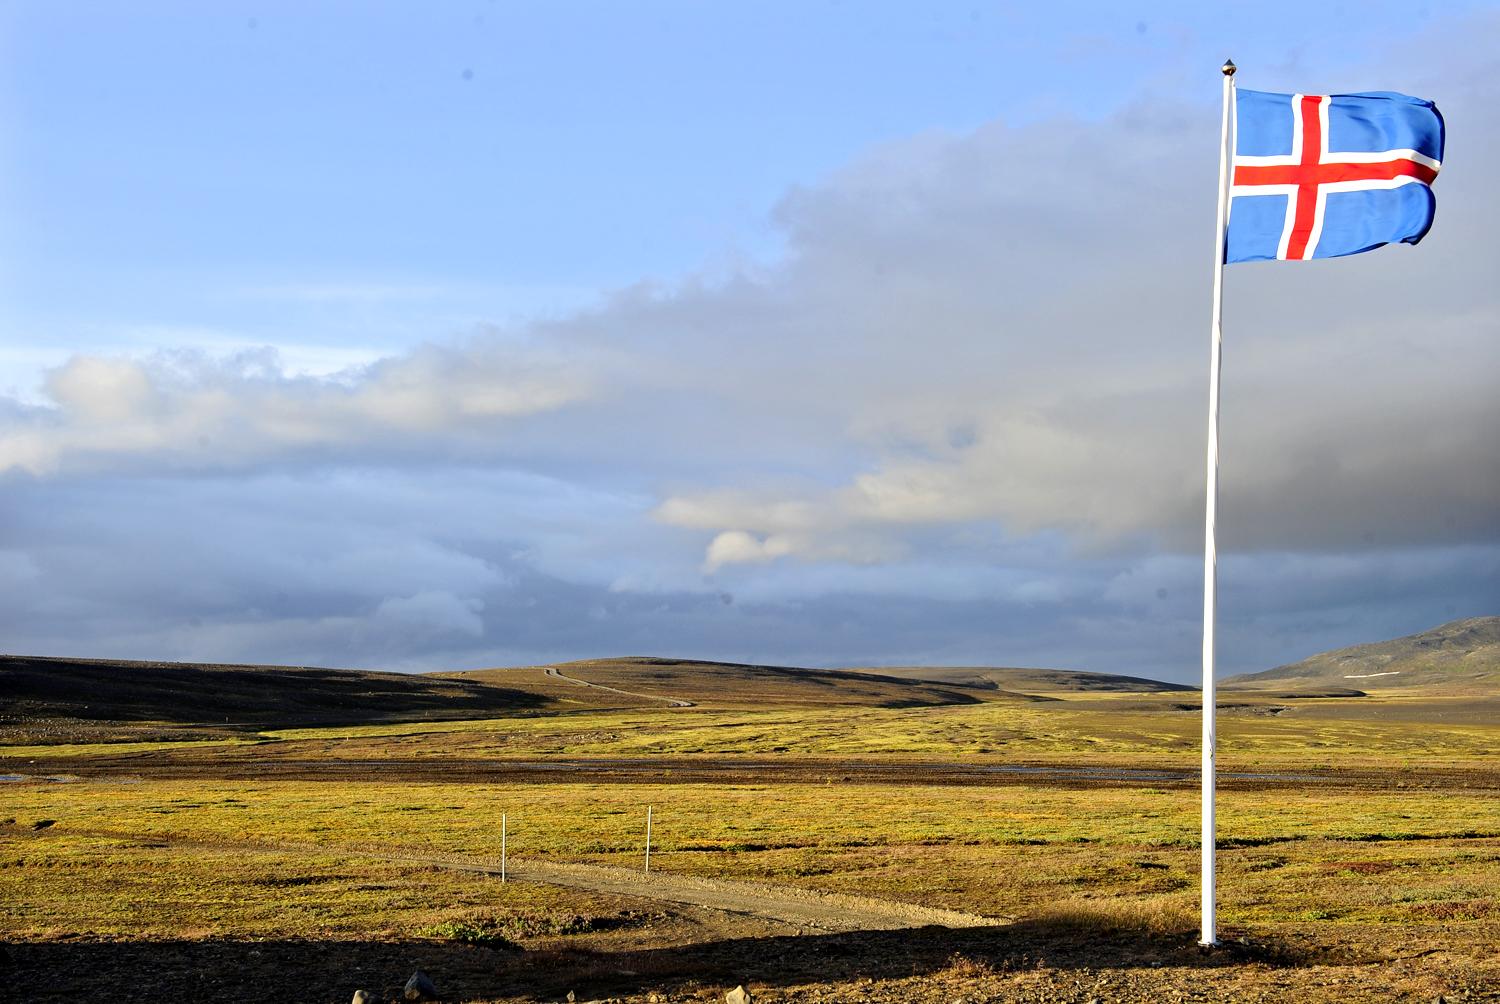 Zászló lobog a szélben a vulkánhoz legközelebb fekvő település határában